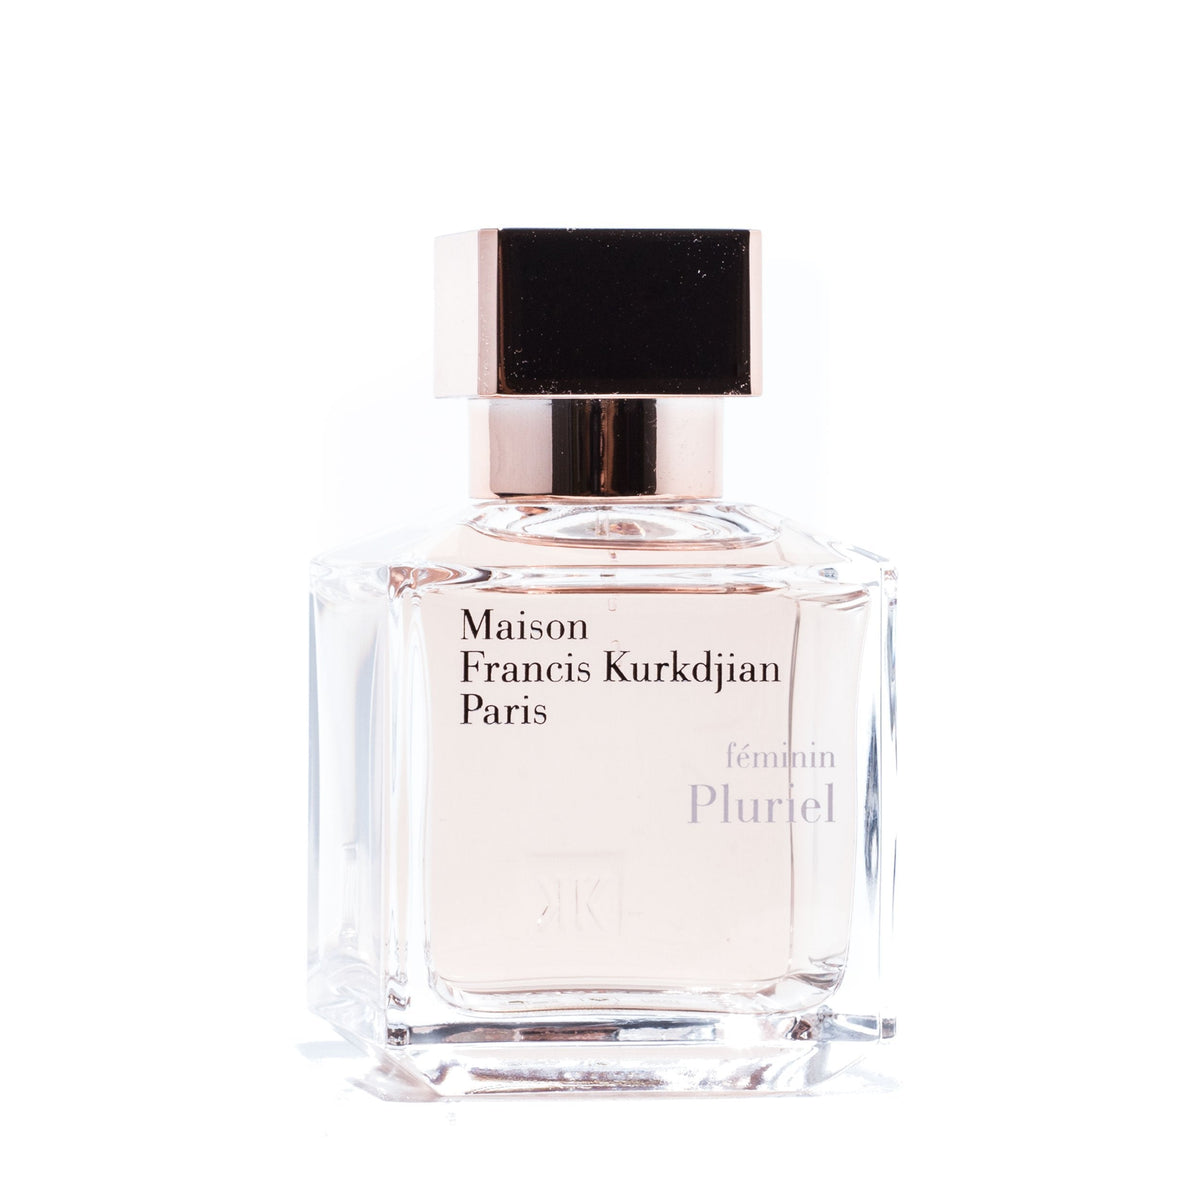 Feminin Pluriel Eau de Parfum Spray for Women by Maison Francis Kurkdjian 2.4 oz.